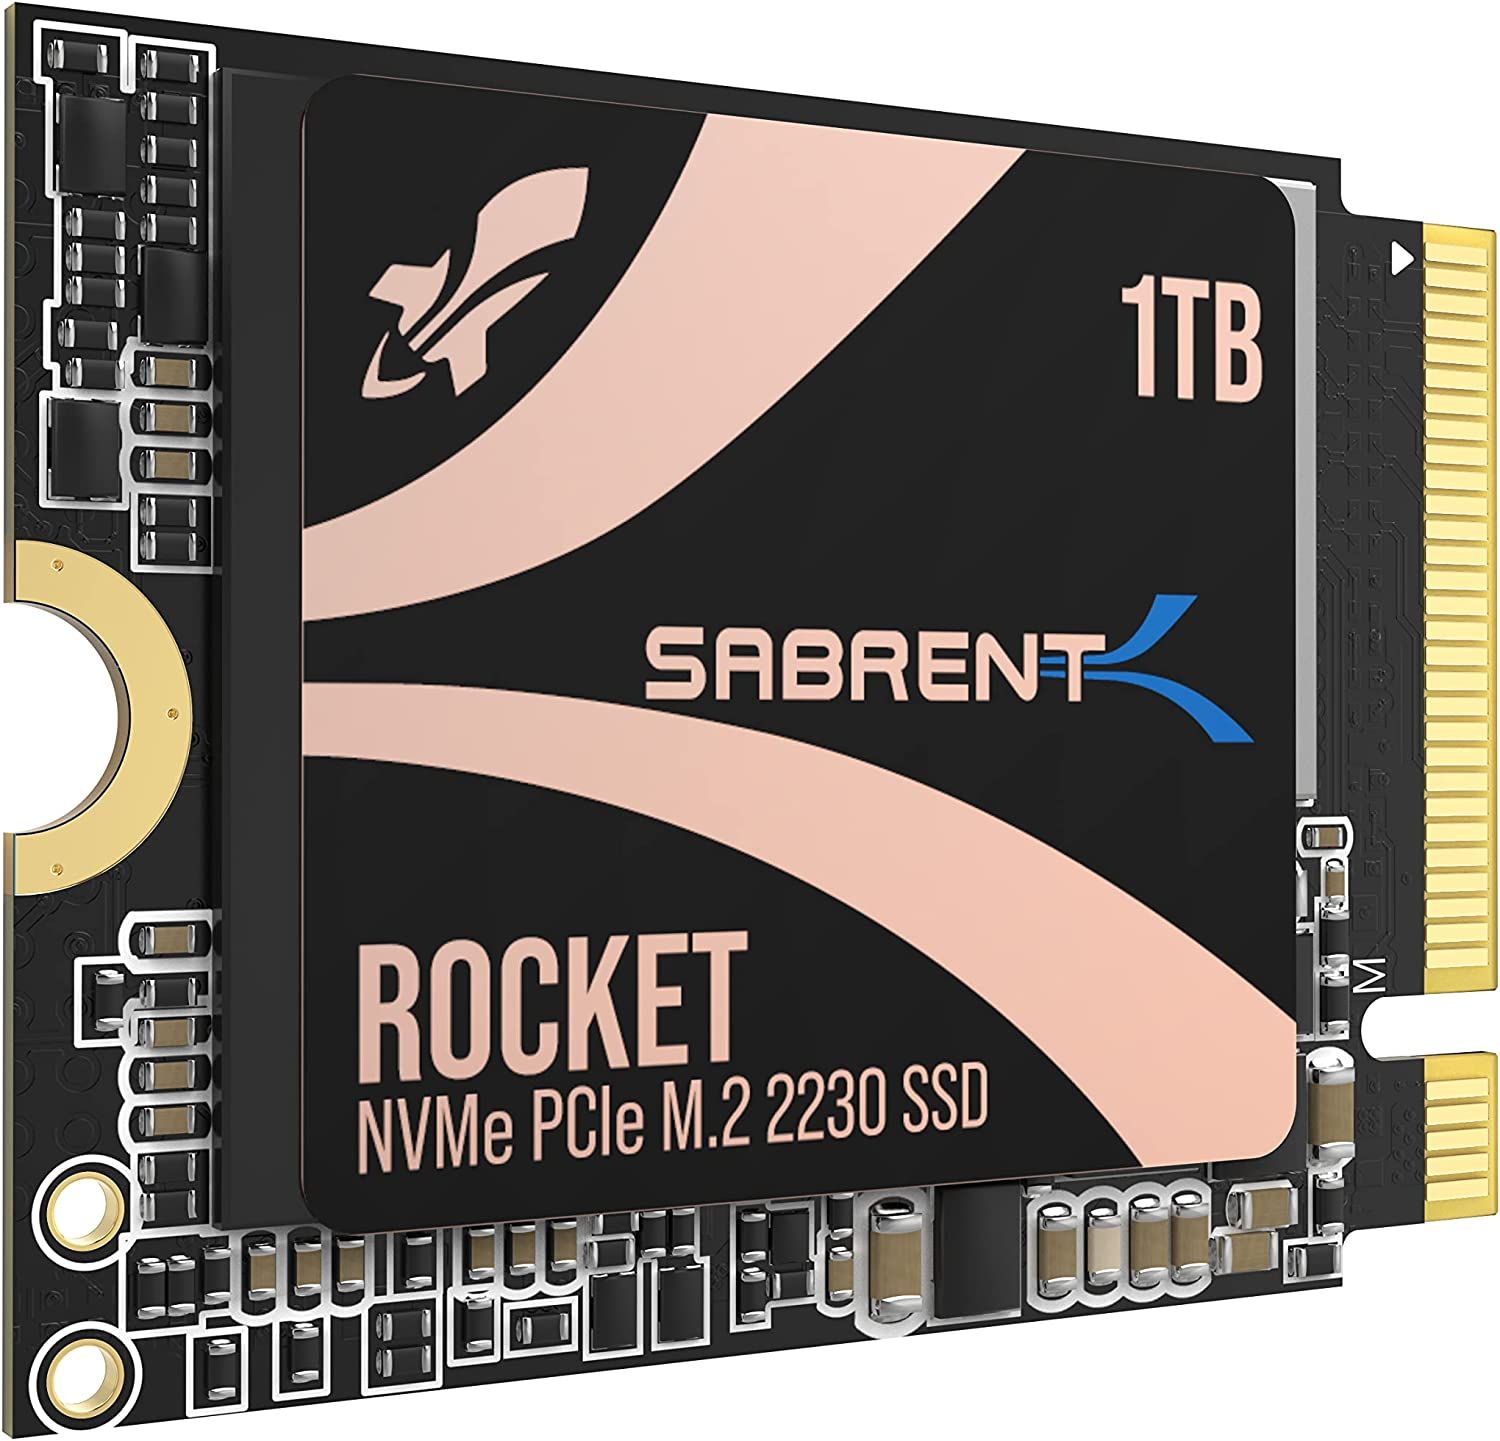 SABRENT Rocket 2230 NVMe 4.0 1TB SSD